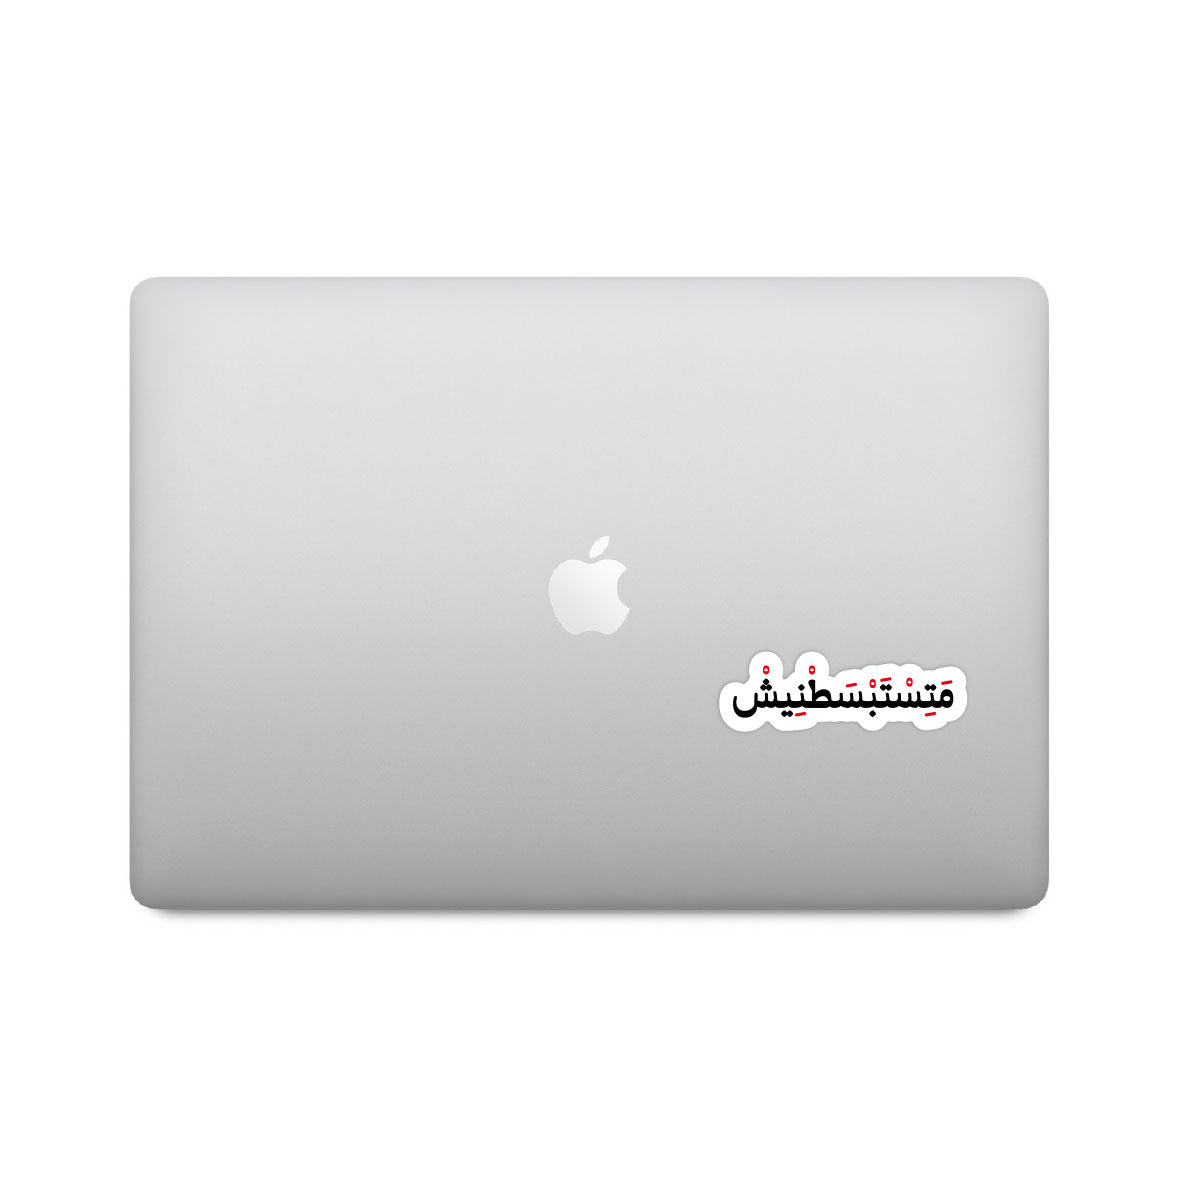 Arabic Funny Sticker